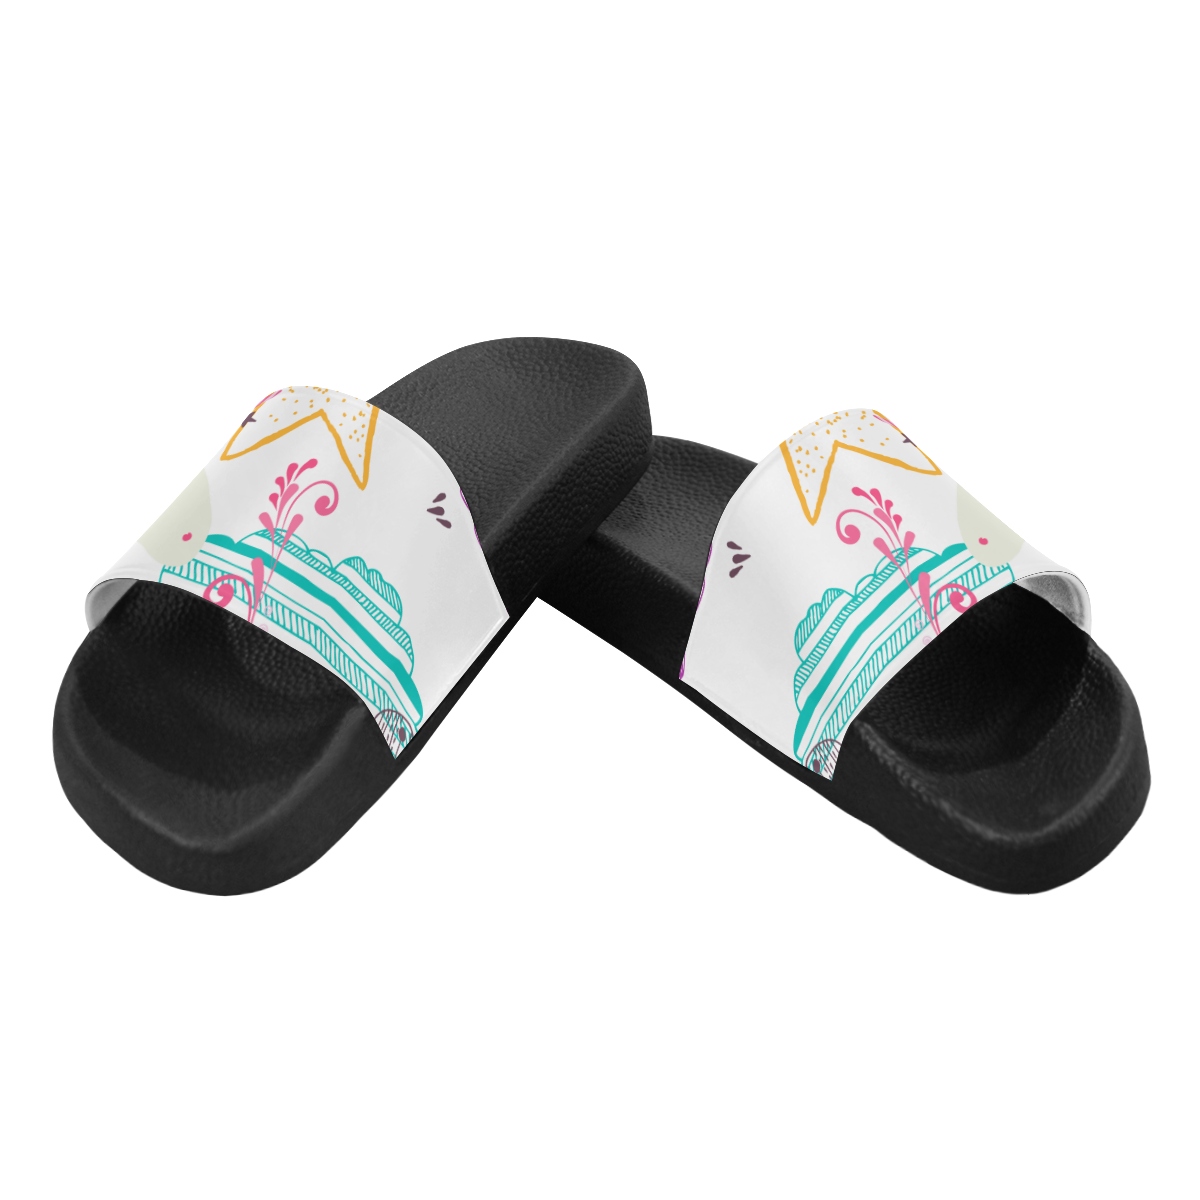 Unicorn Dream Women's Slide Sandals (Model 057)